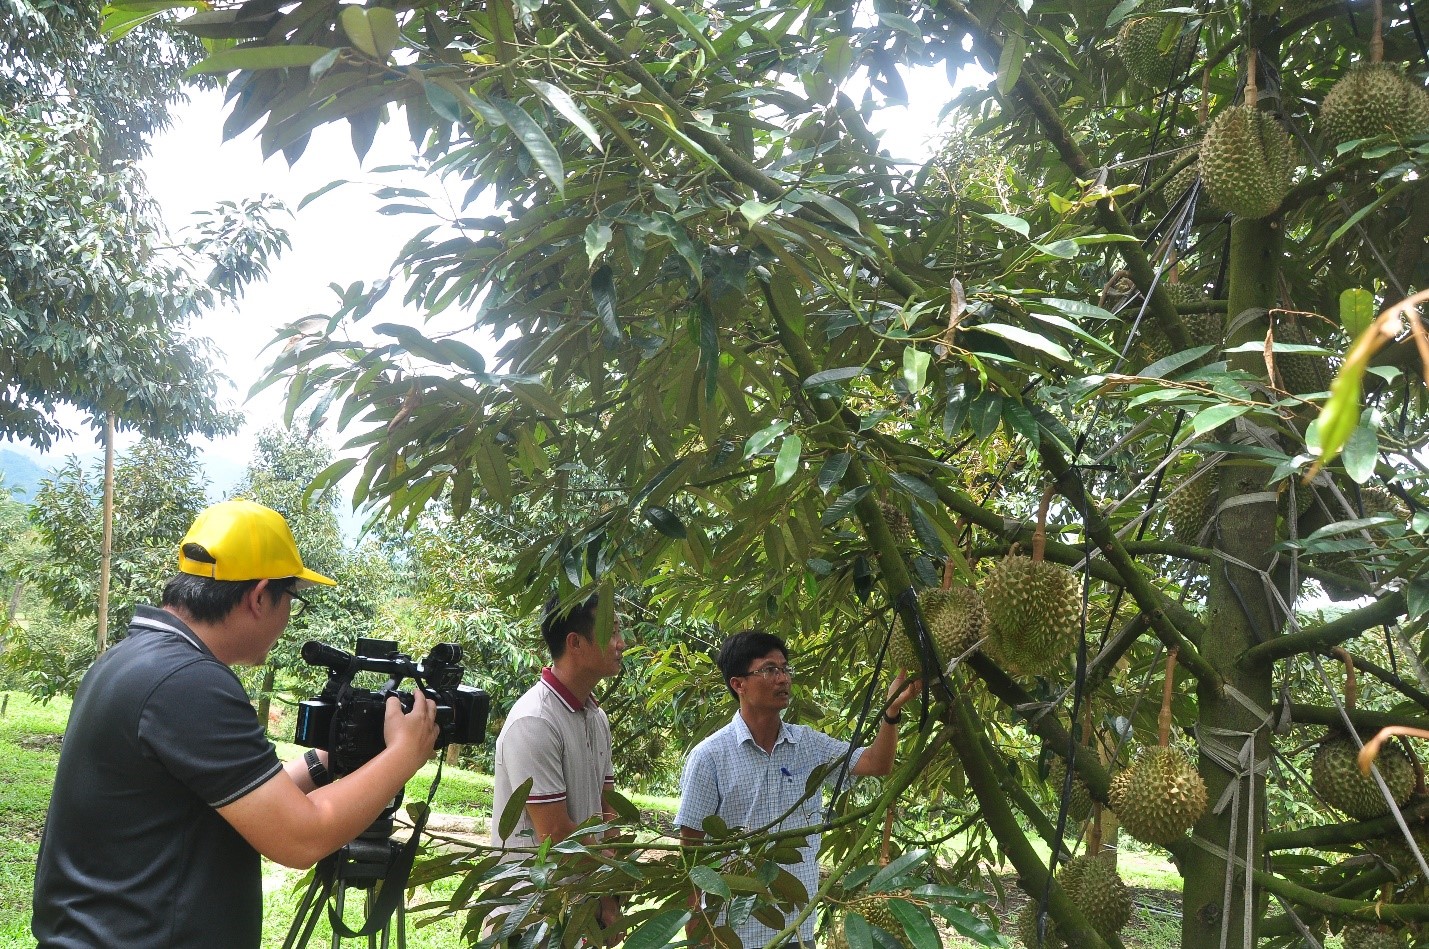 Kỷ sư nông nghiệp Huyện Khánh Sơn giới thiệu về cây sầu riêng Khánh Sơn với nông nghiệp sạch từ phân bón hữu cơ